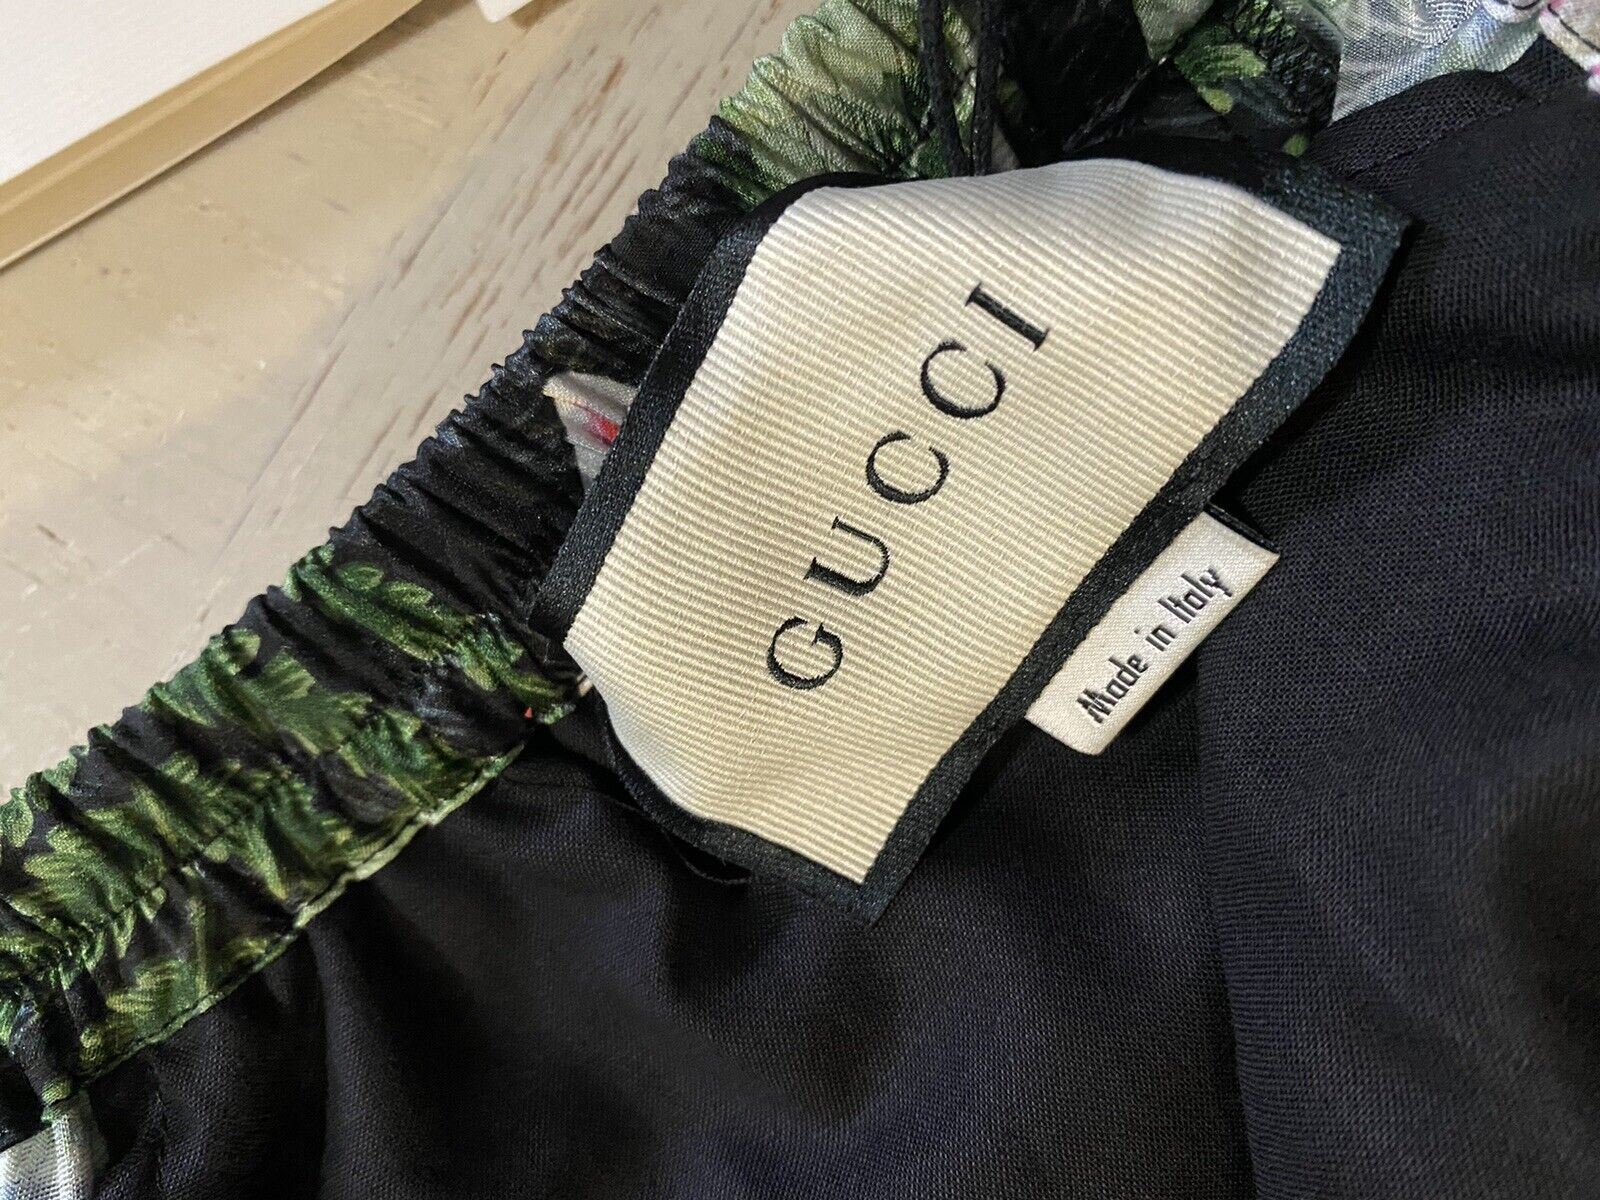 NWT $980 Gucci Men’s Gucci Soul Monogram Short Pents Black/Green/Mul. 38 US/54 E